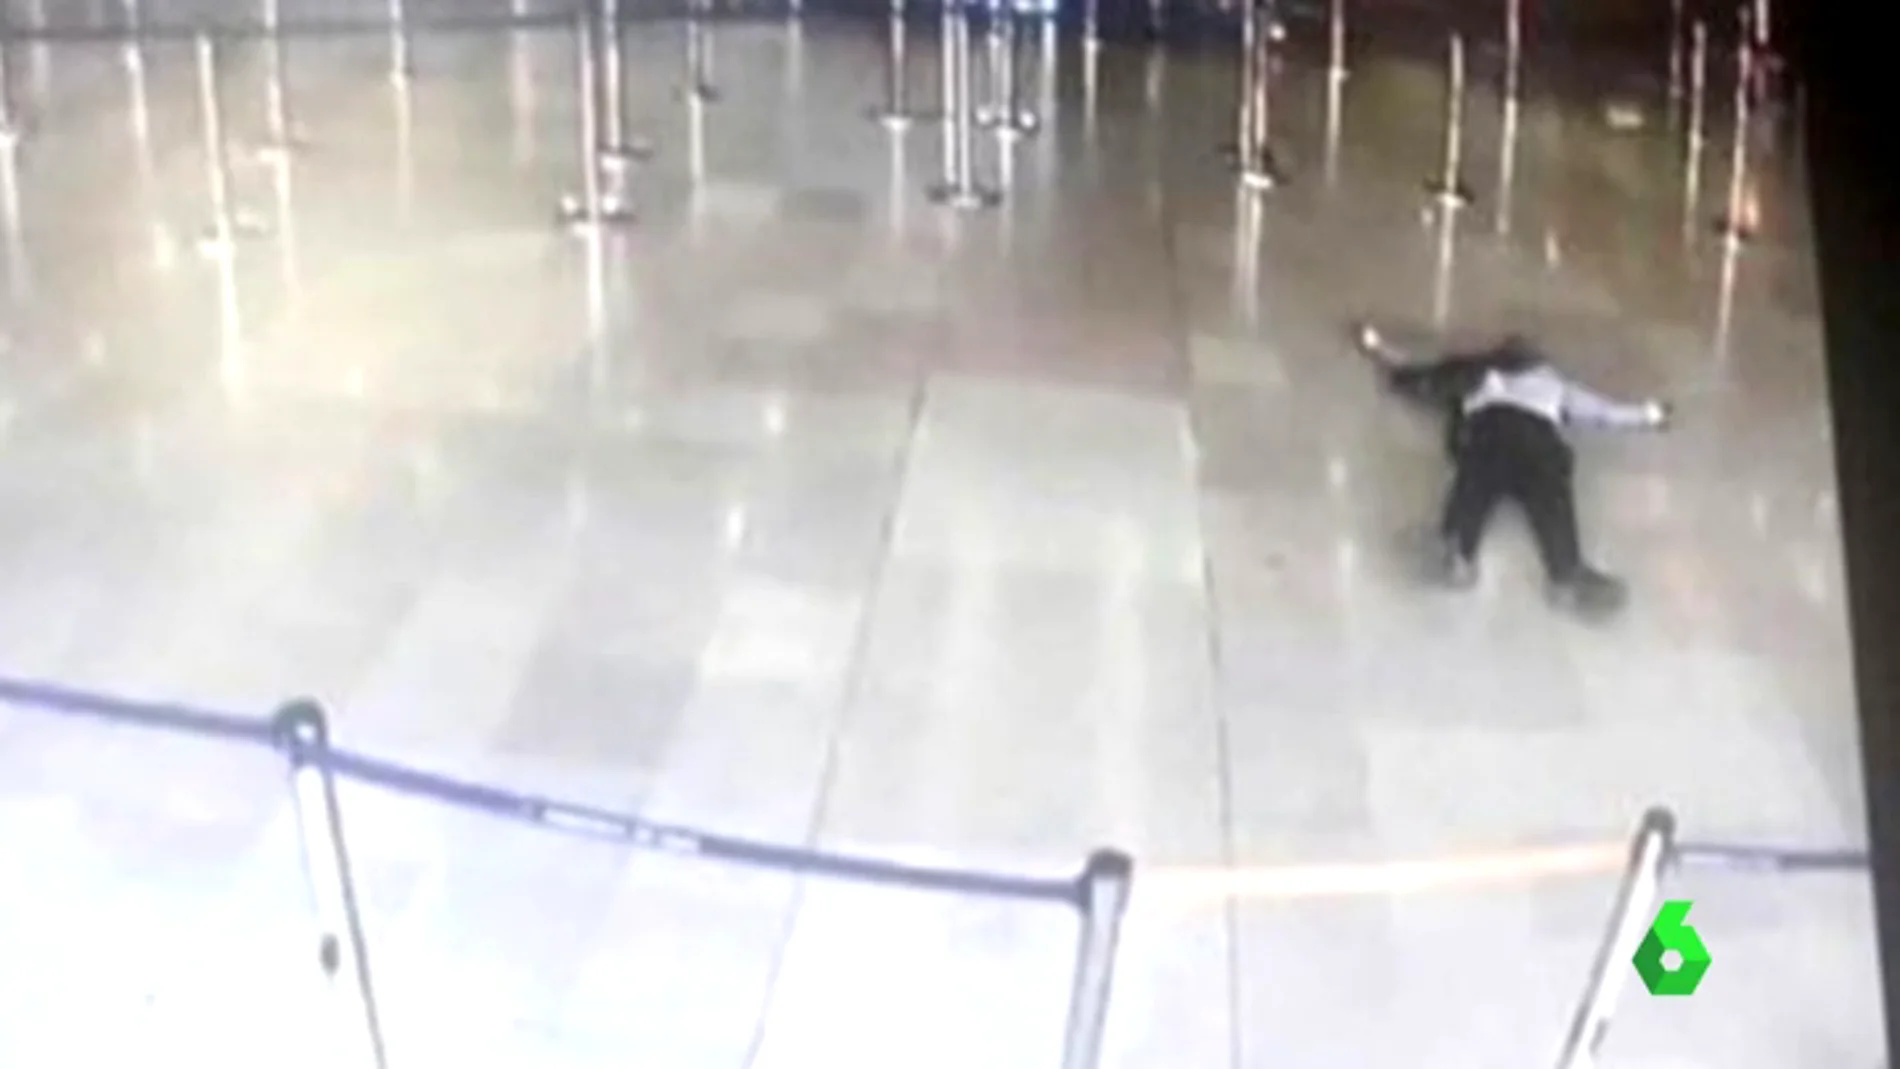 Frame 0.512974 de: Abatido un hombre en el aeropuerto parisino de Orly tras quitar el arma a un soldado